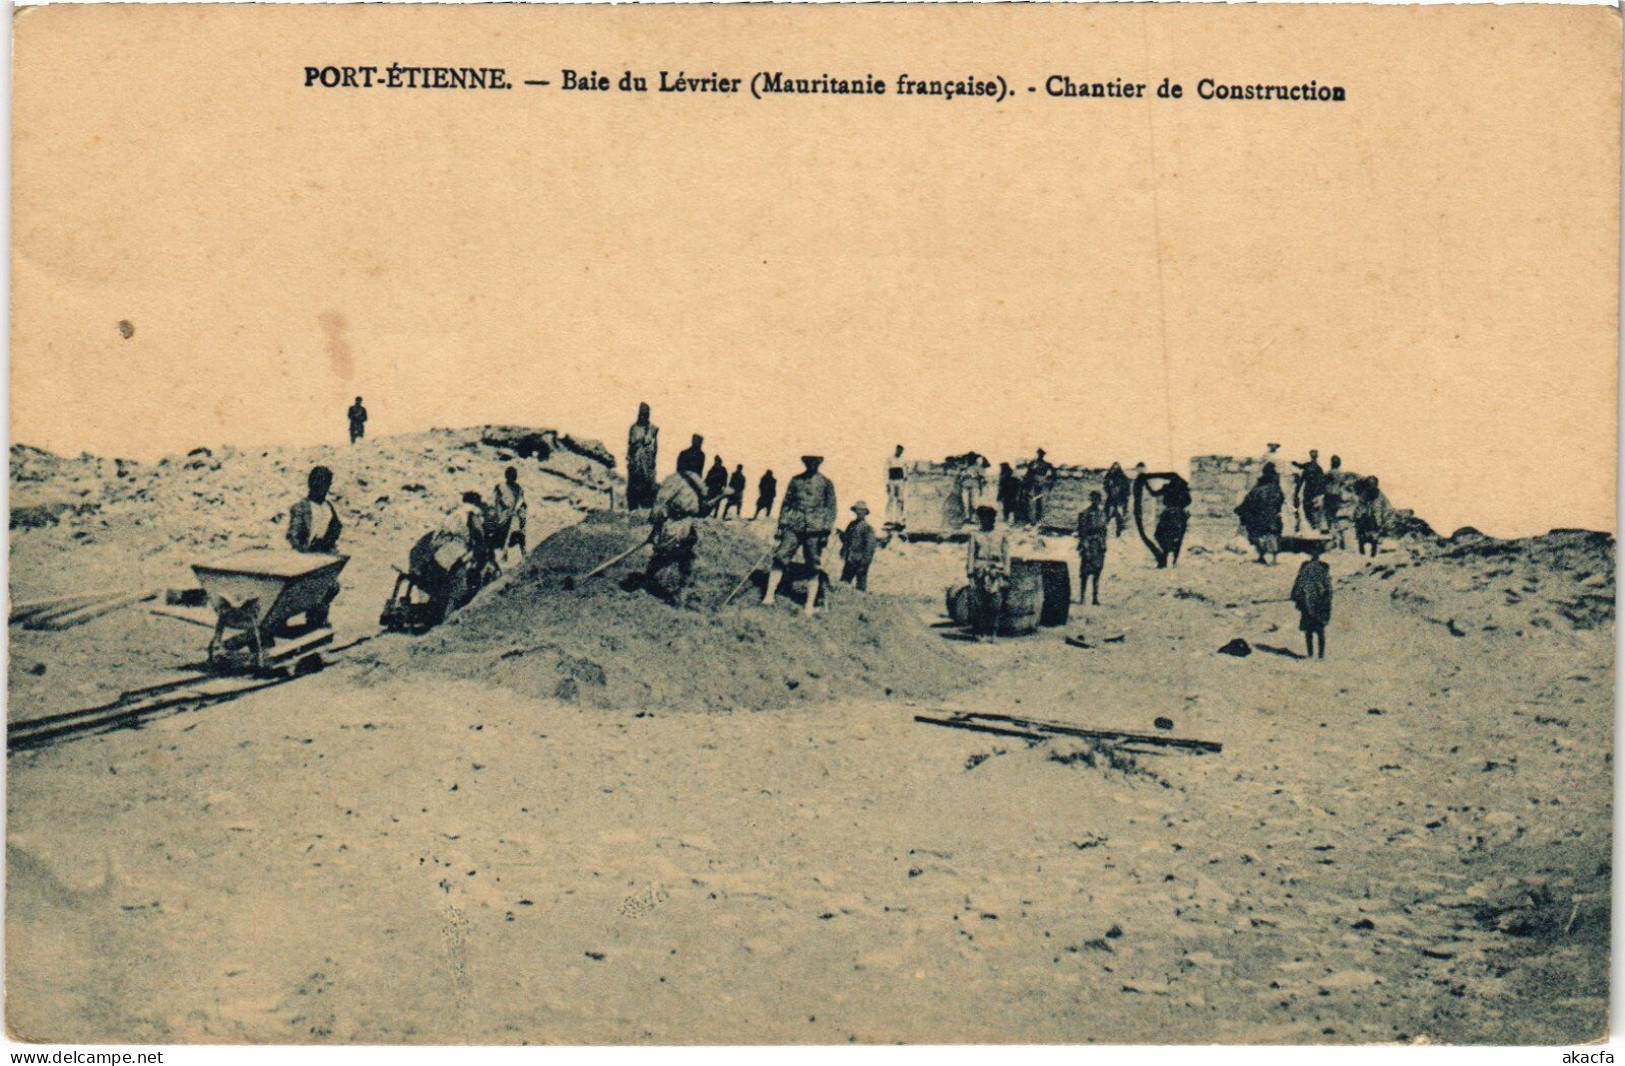 PC BAIE DU LÉVRIER PORT-ETIENNE CHANTIER DE CONSTRUCTION MAURITANIA (a49961) - Mauritanie